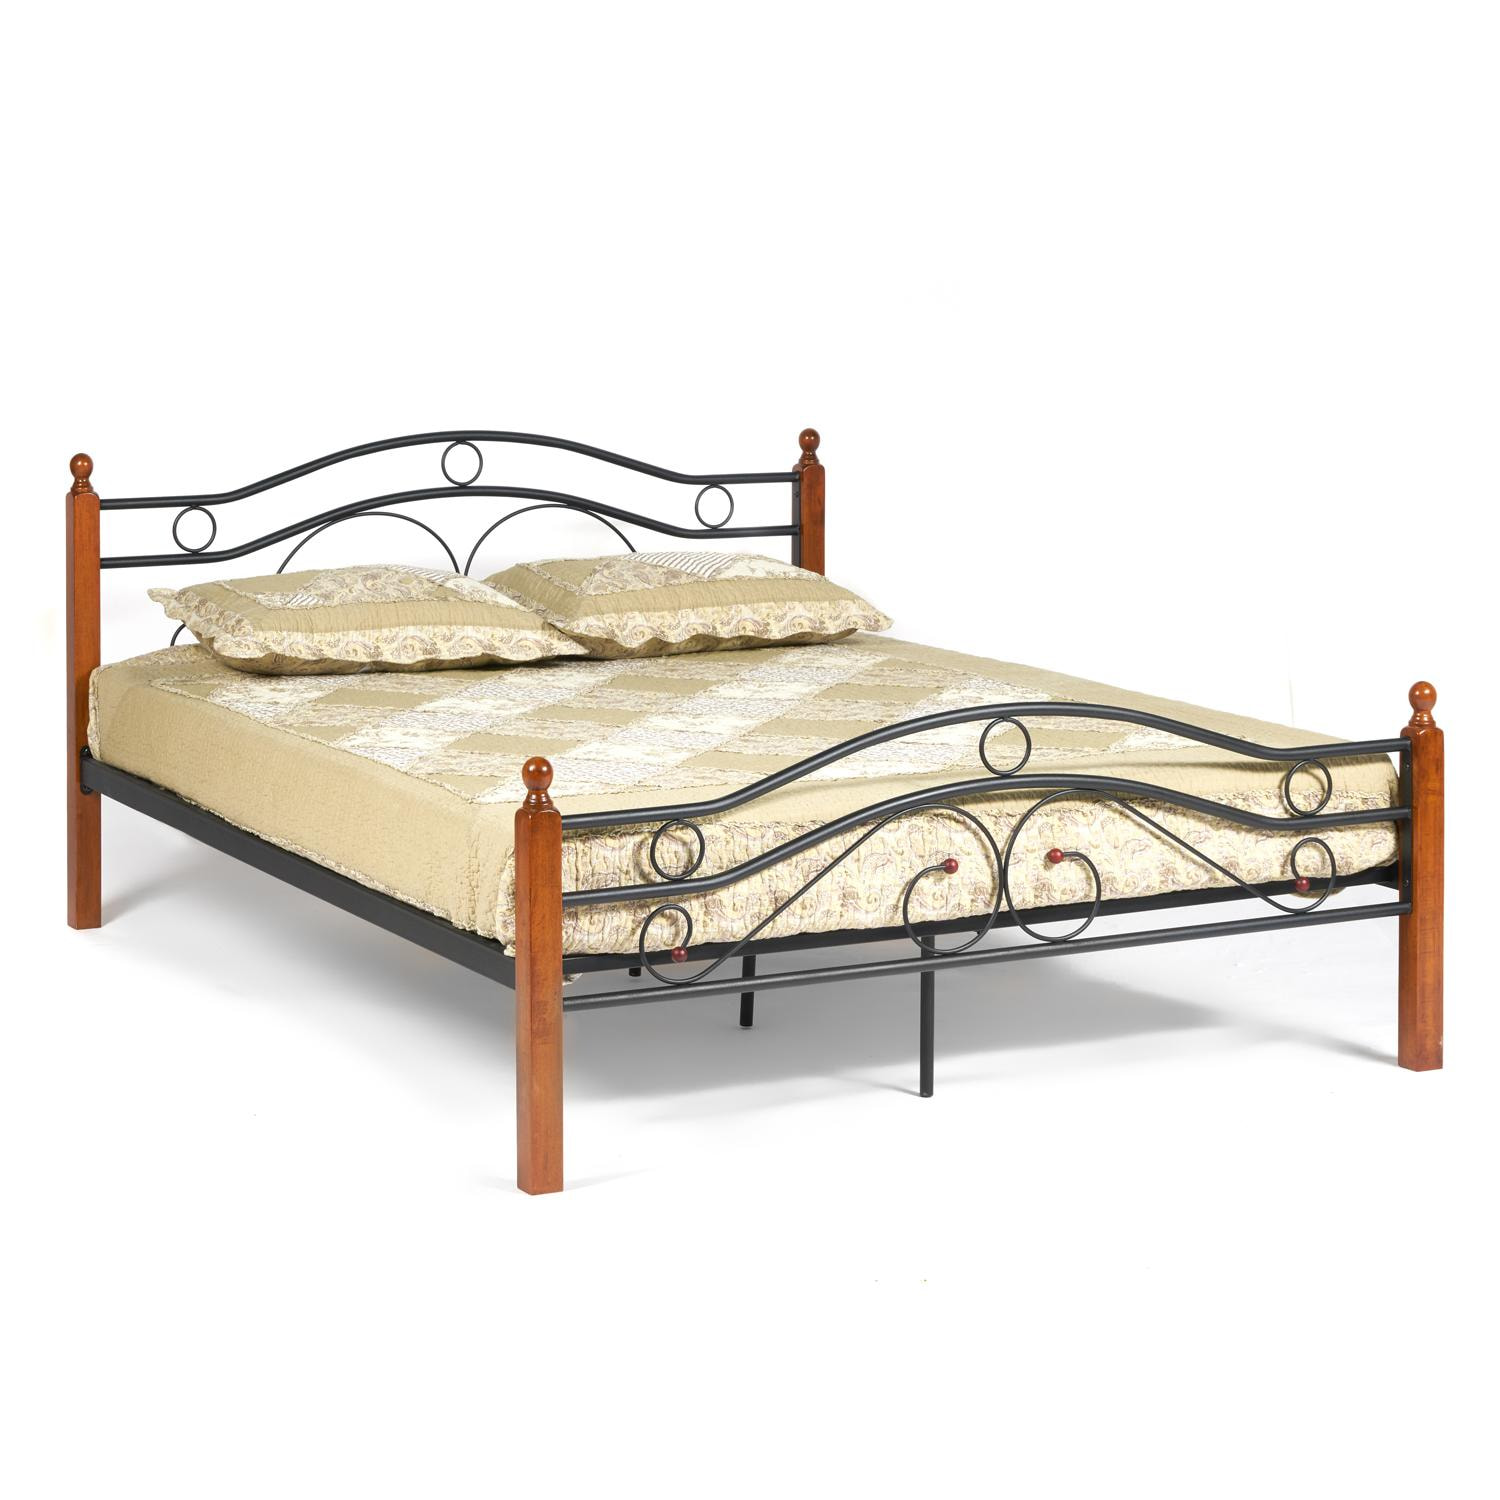 Кровать AT-803 Wood slat base дерево гевея/металл, 160*200 см (Queen bed), красный дуб/черный